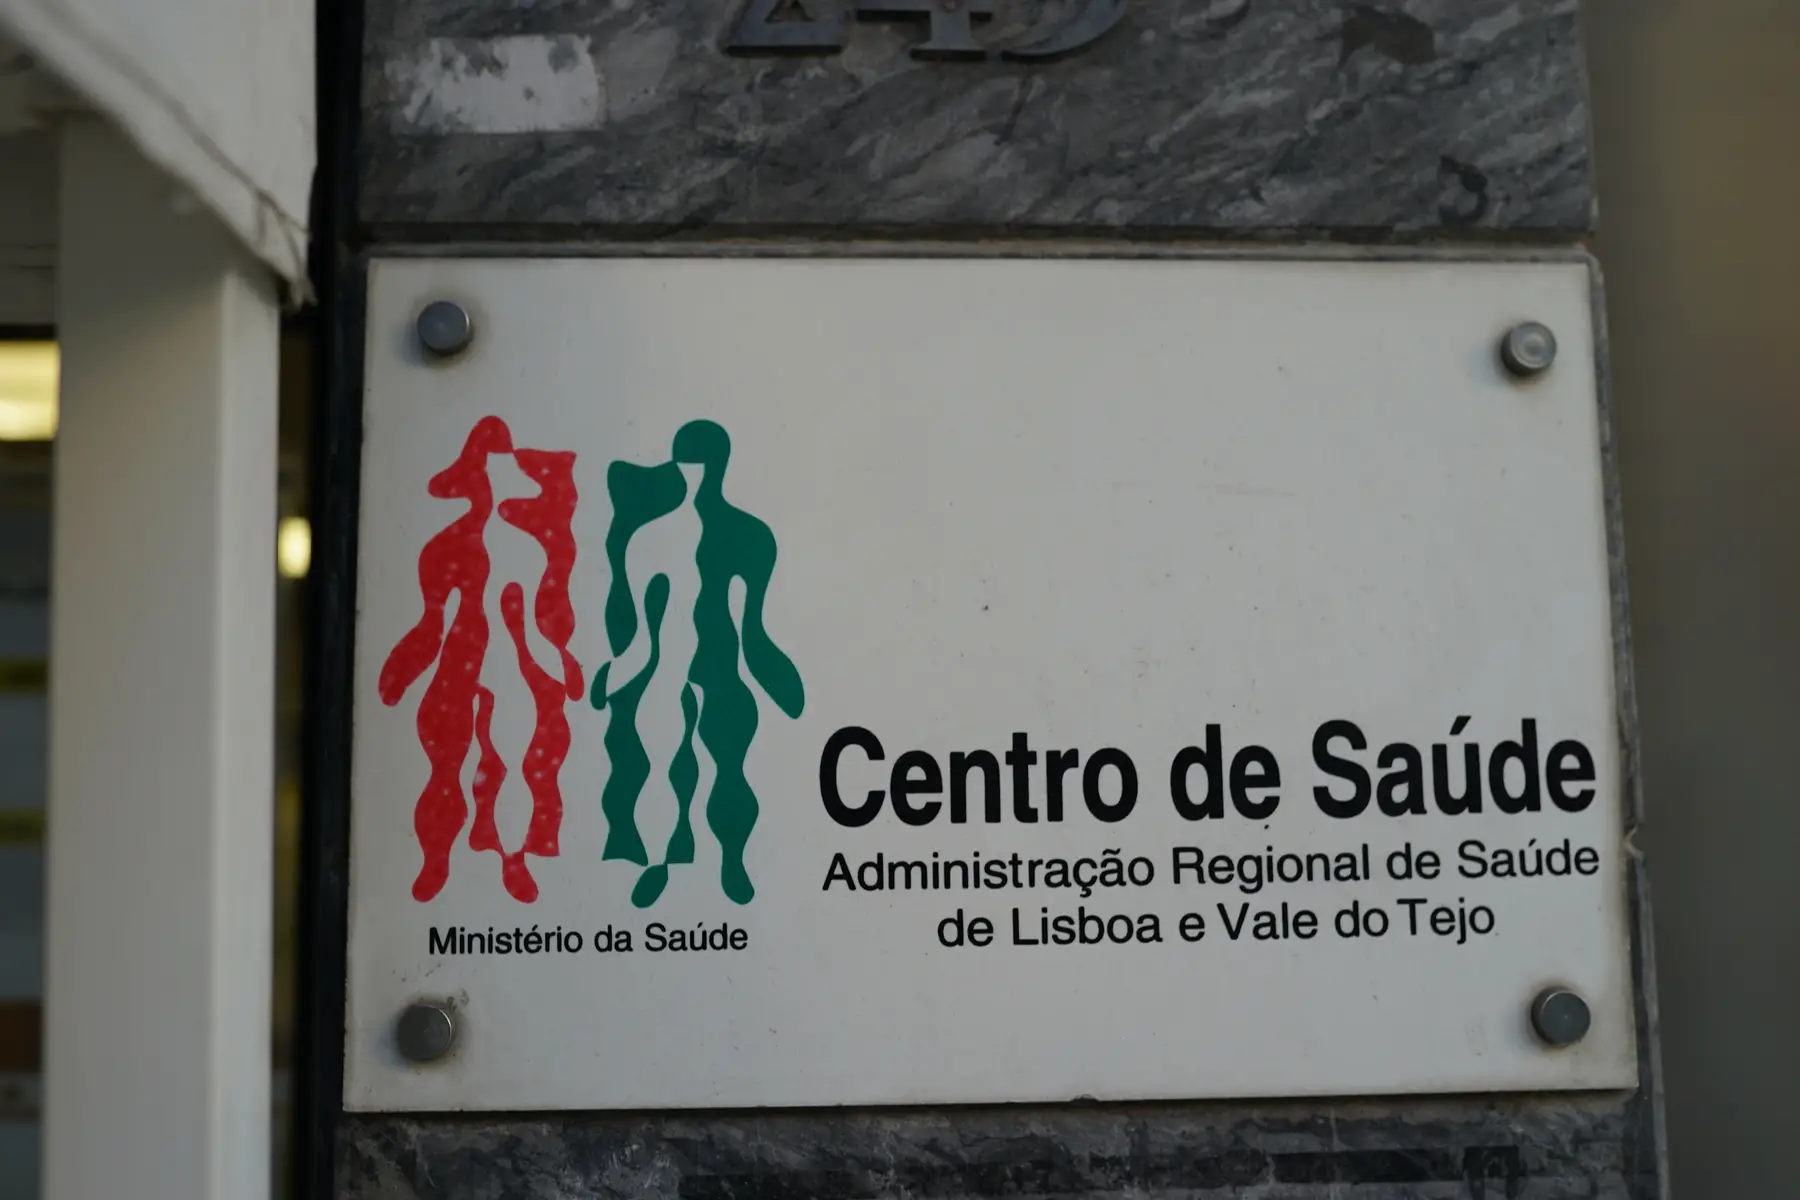 a sign for a health center (centro de saude) in Lisbon, Portugal